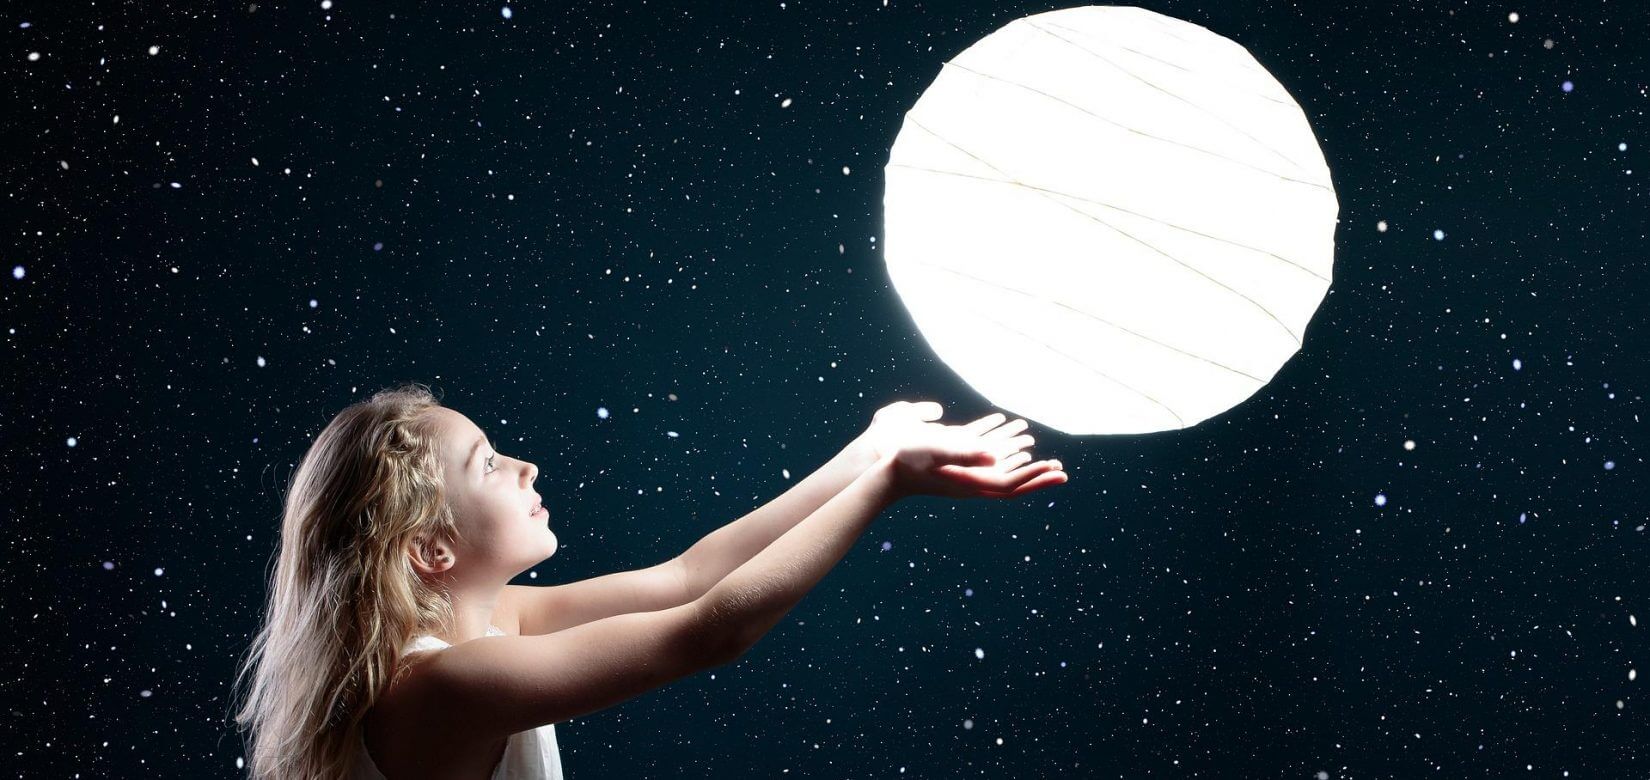 Αστρολογία: Η Σελήνη στα δώδεκα ζώδια - Τι σημαίνει για κάθε ένα